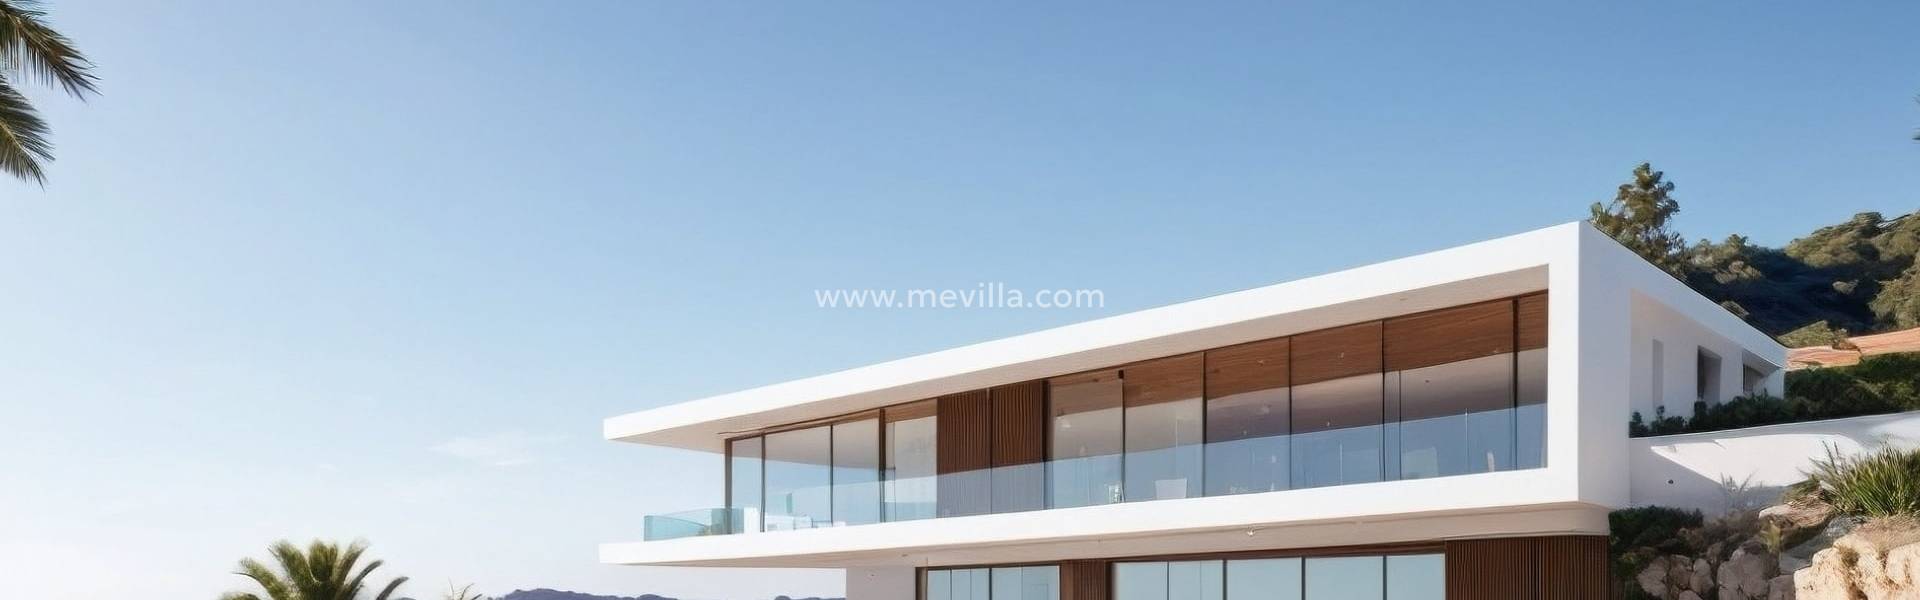 Kaufen freistehendes Haus in Campoamor Costa Blanca. Mehr Exclusive Katalog